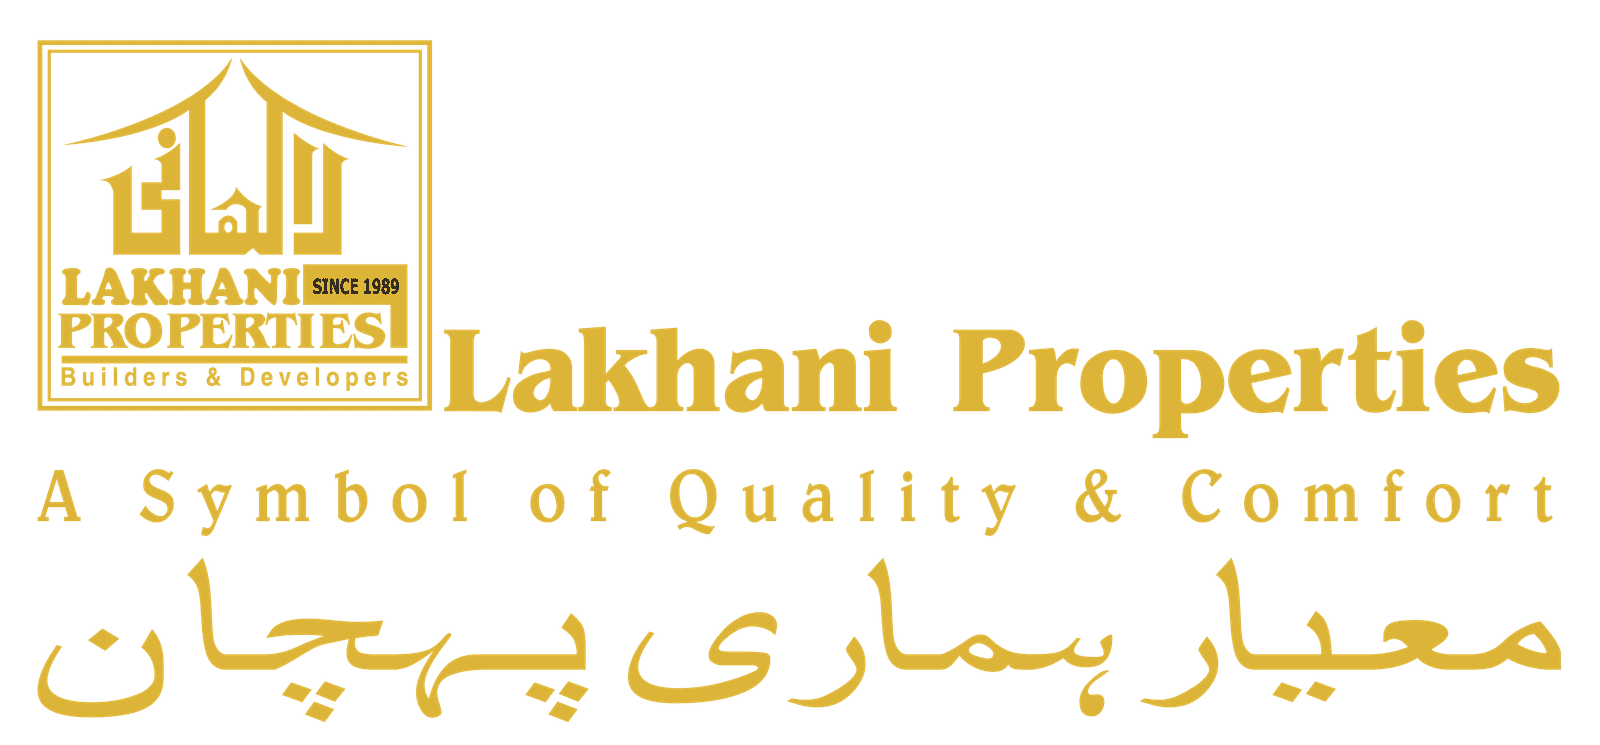 Lakhani Properties